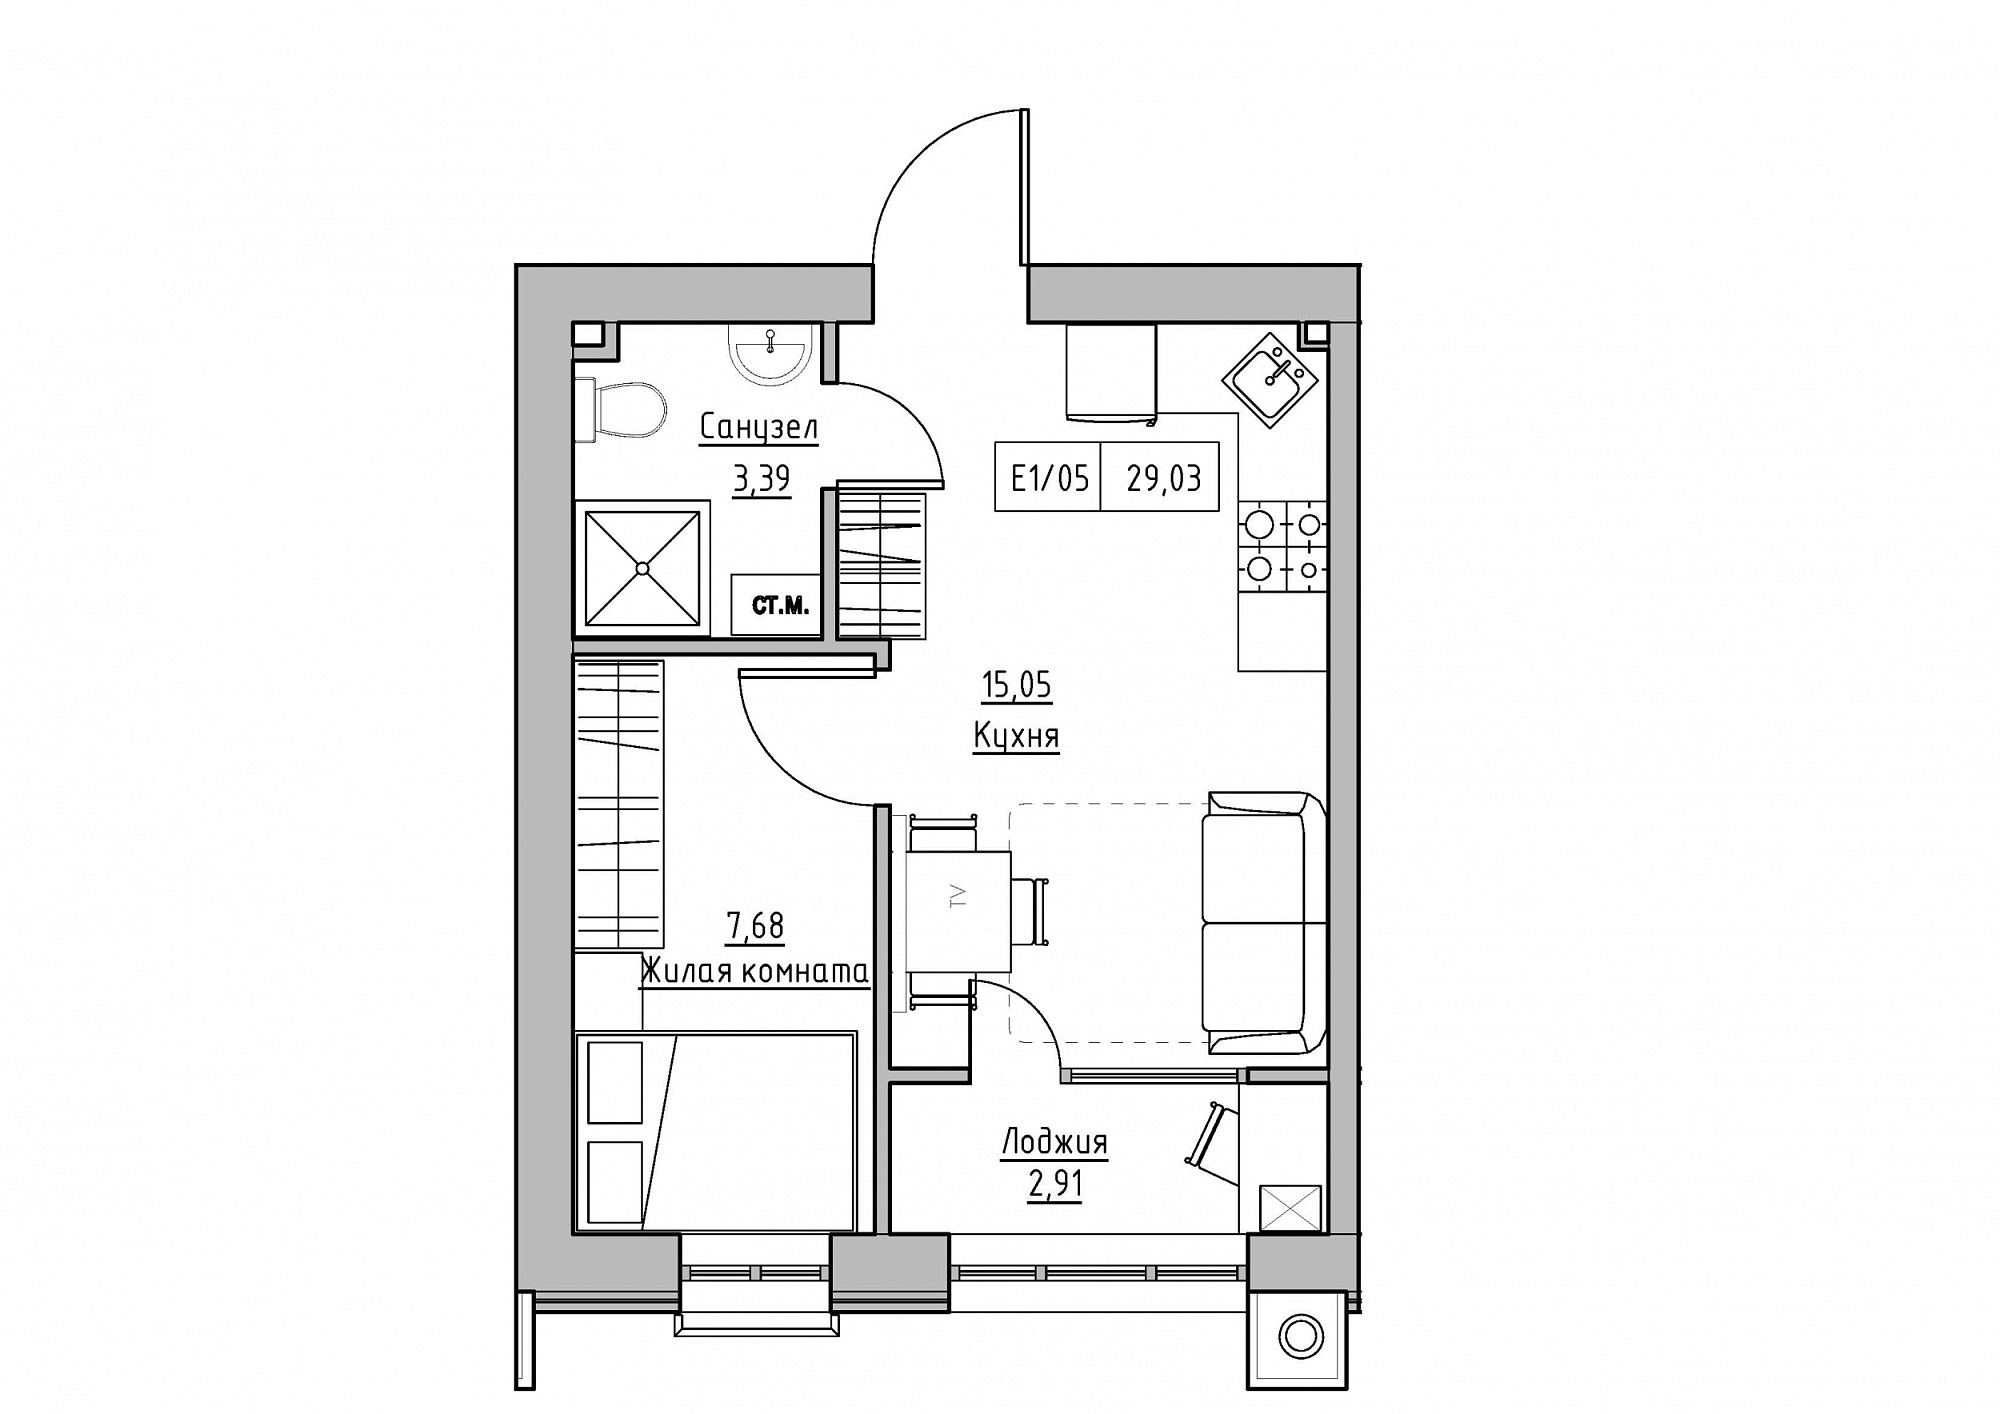 Планування 1-к квартира площею 29.03м2, KS-012-02/0007.